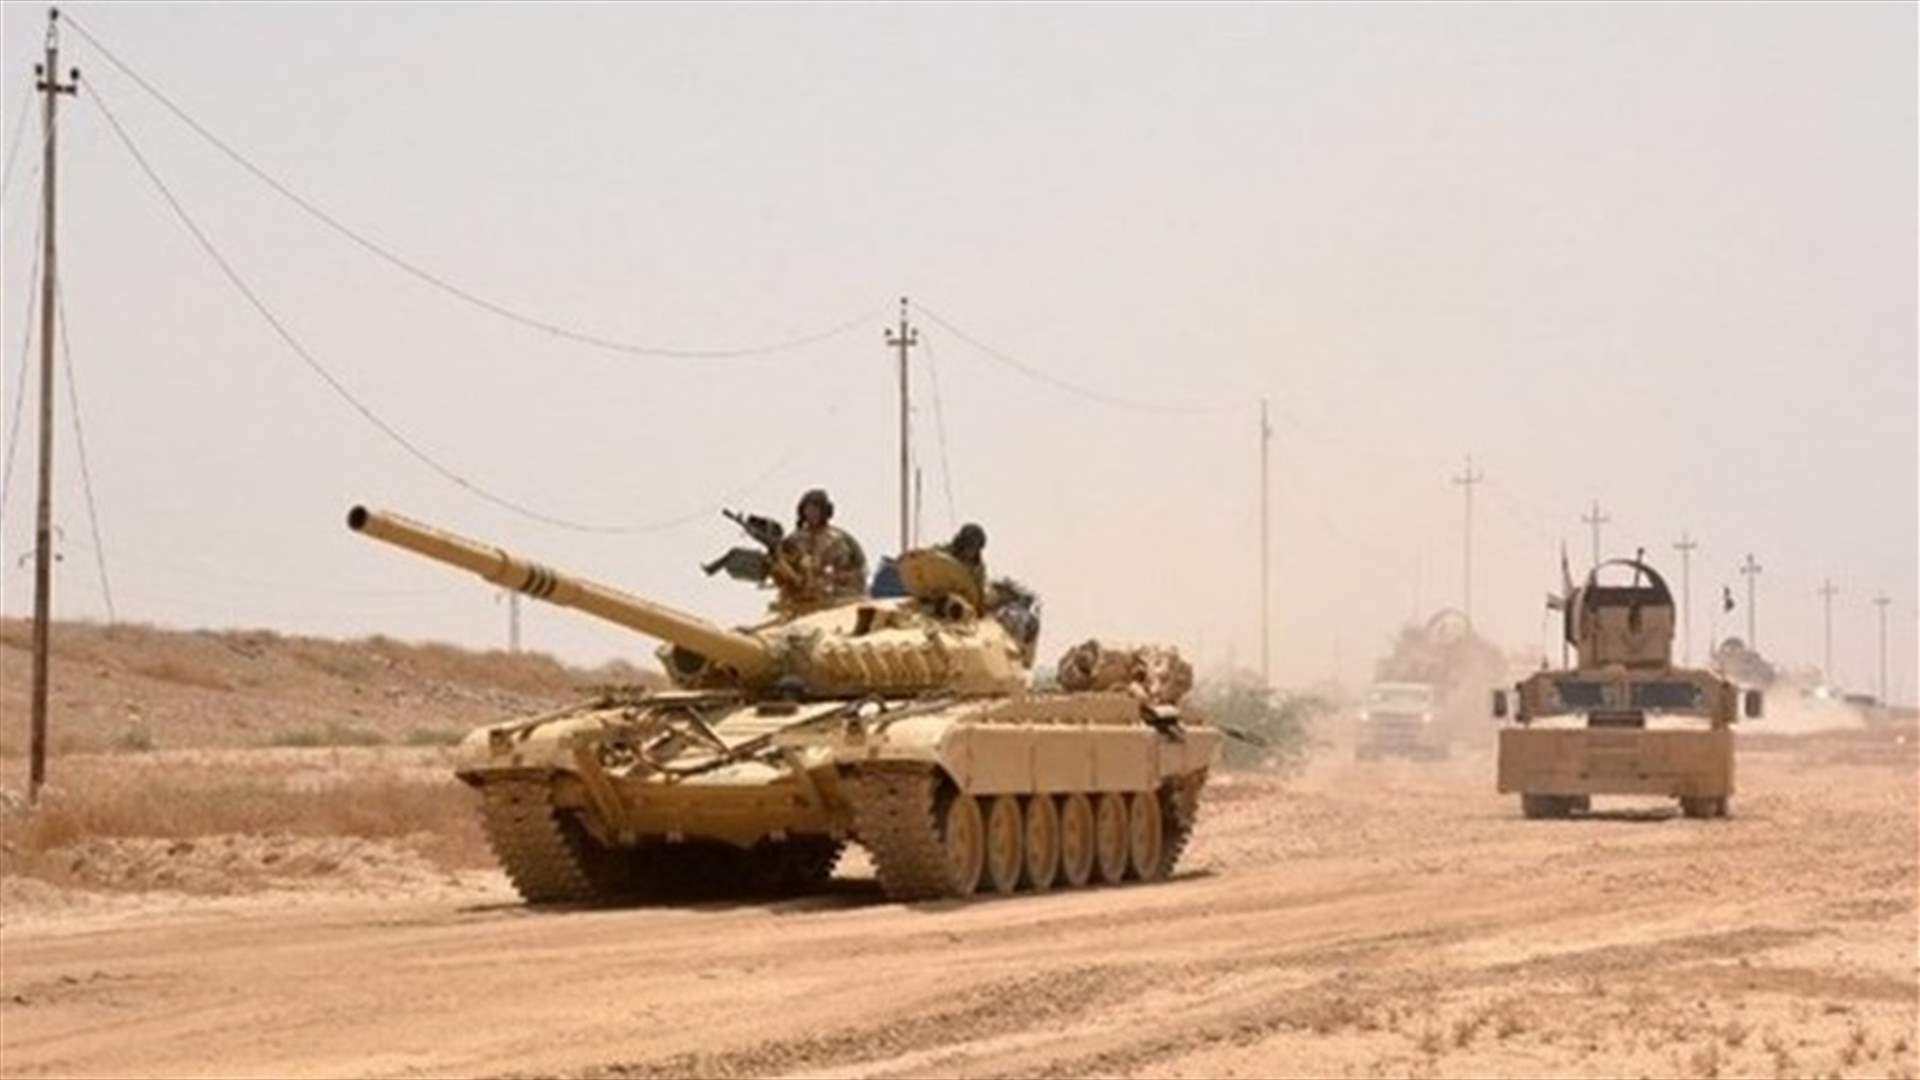 القوات العراقية تبدأ هجوما لاستعادة بلدة القيارة...والأمم المتحدة تتوقع &quot;نزوحا هائلا&quot; من الموصل